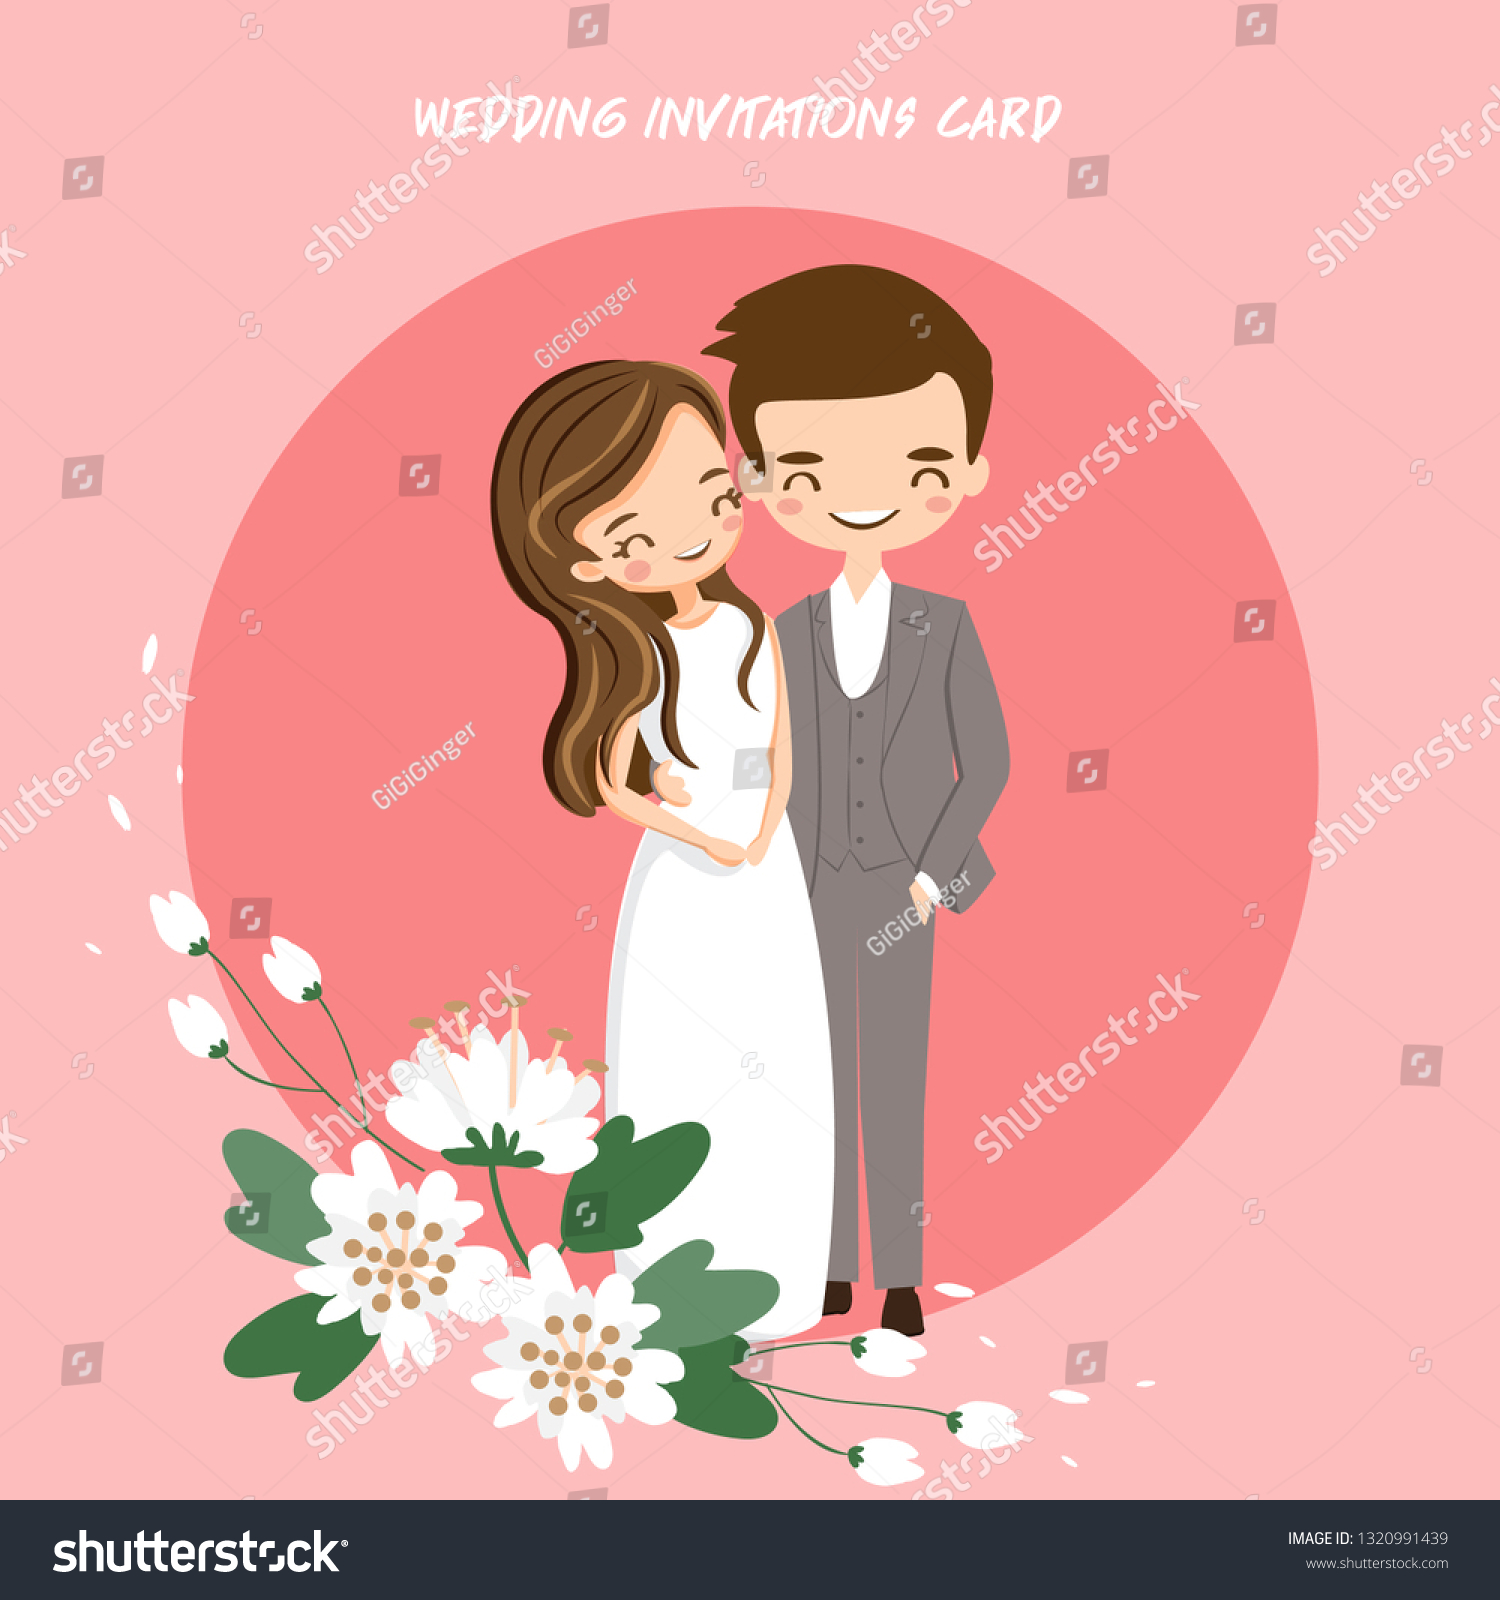 С годовщиной свадьбы стильные открытки